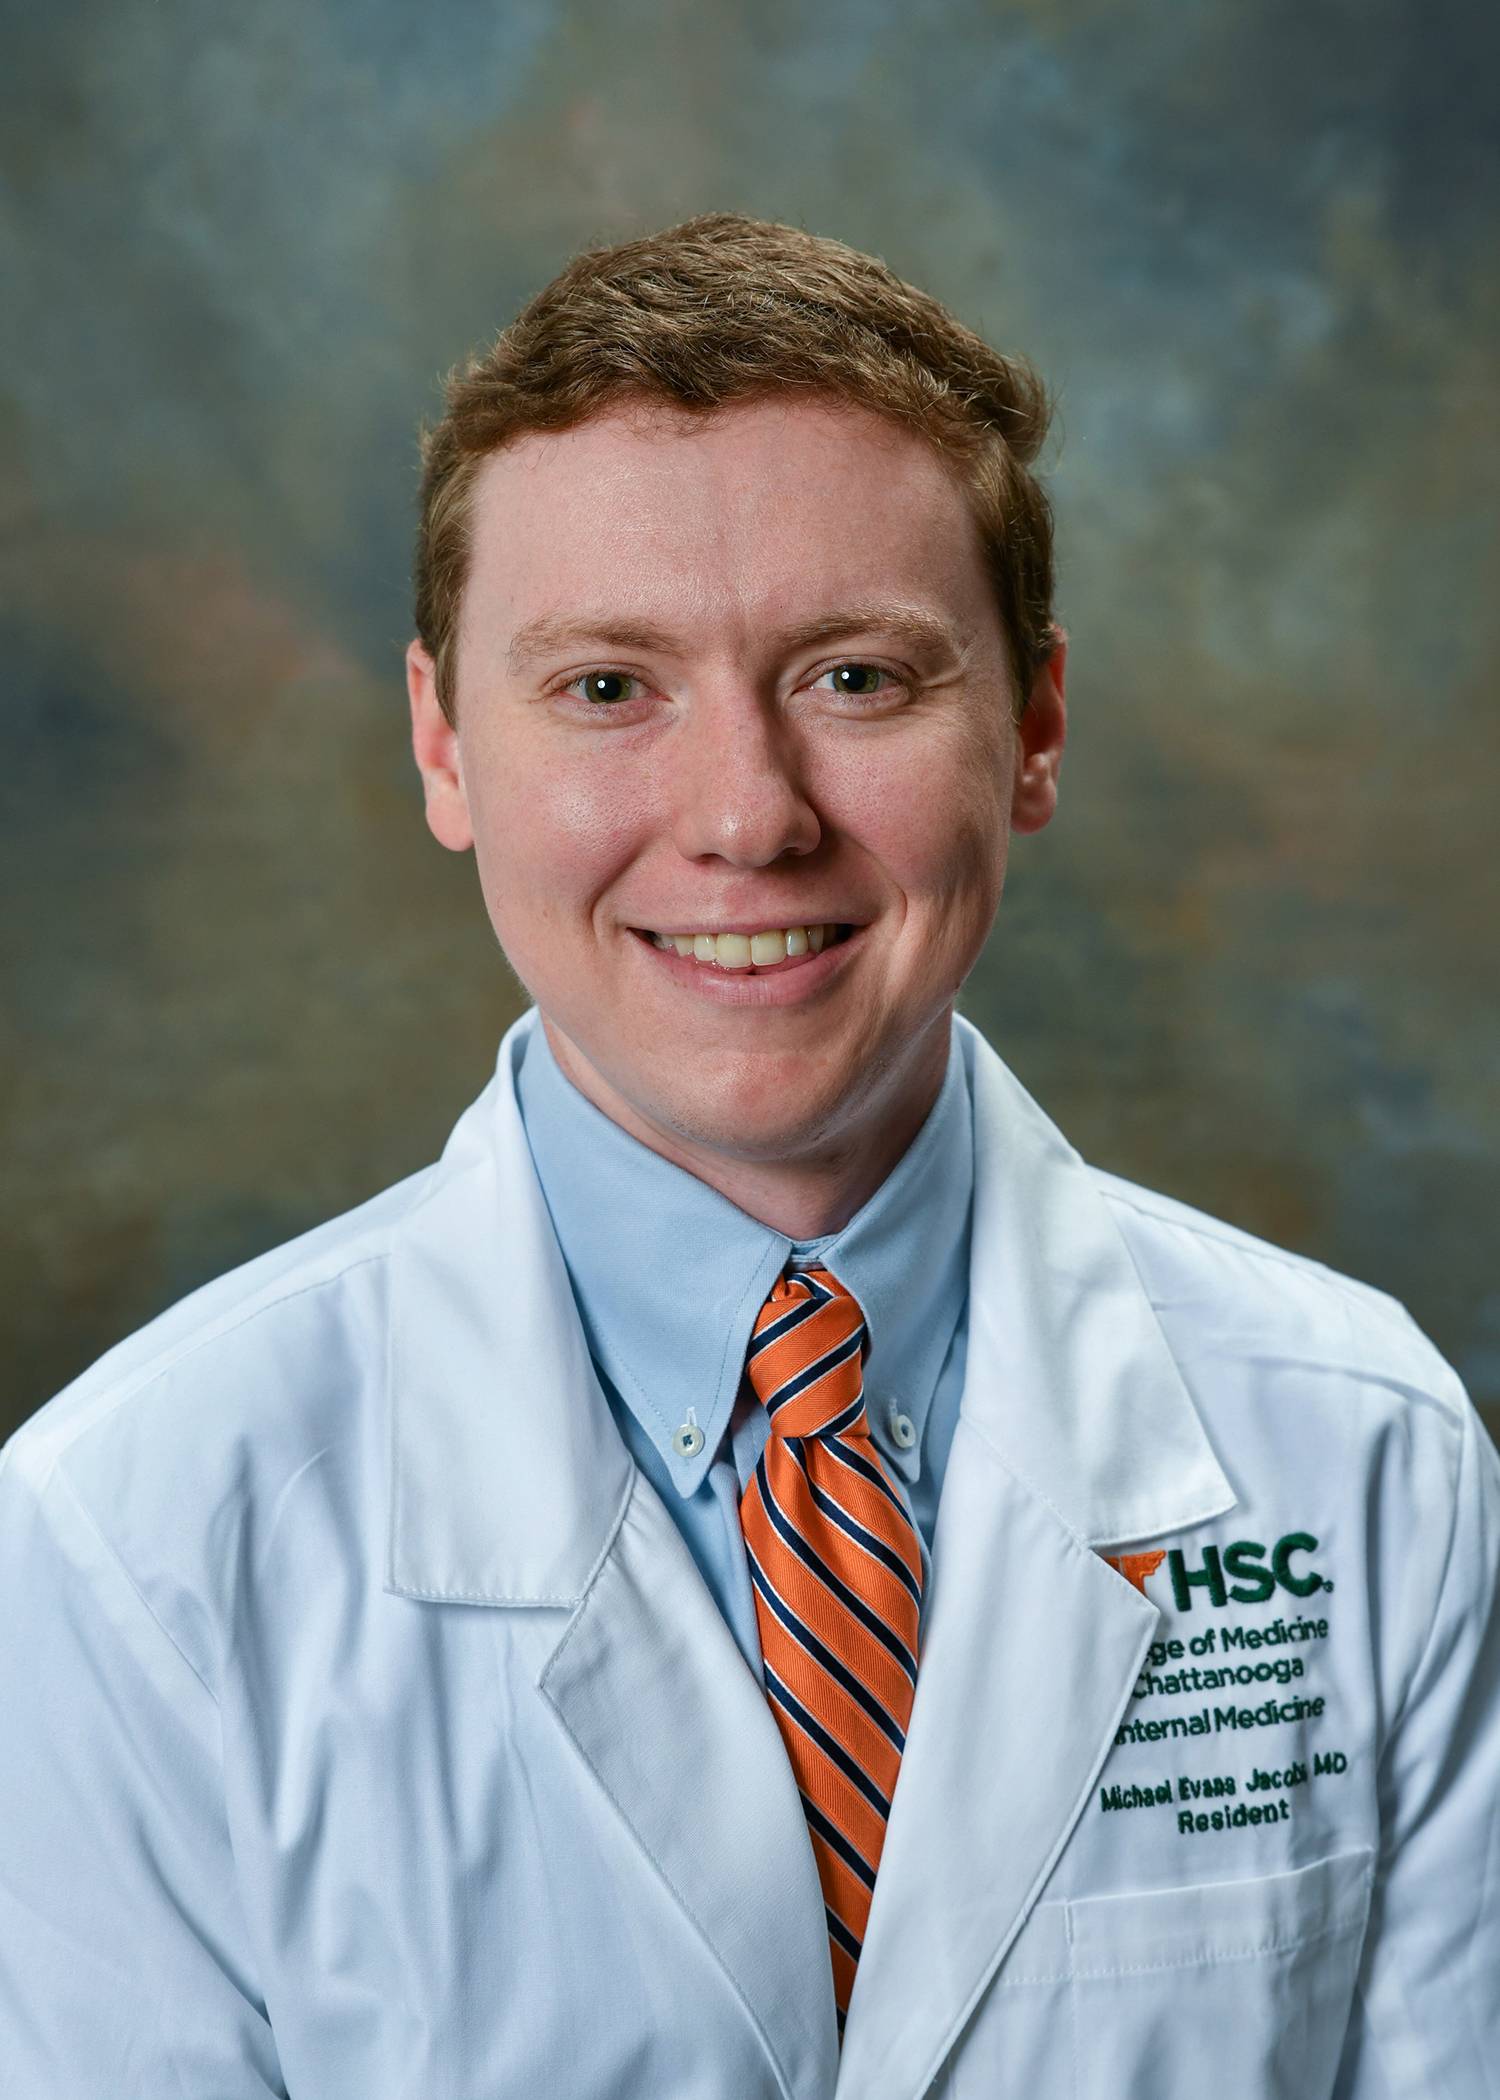 Dr. Michael Jacobs